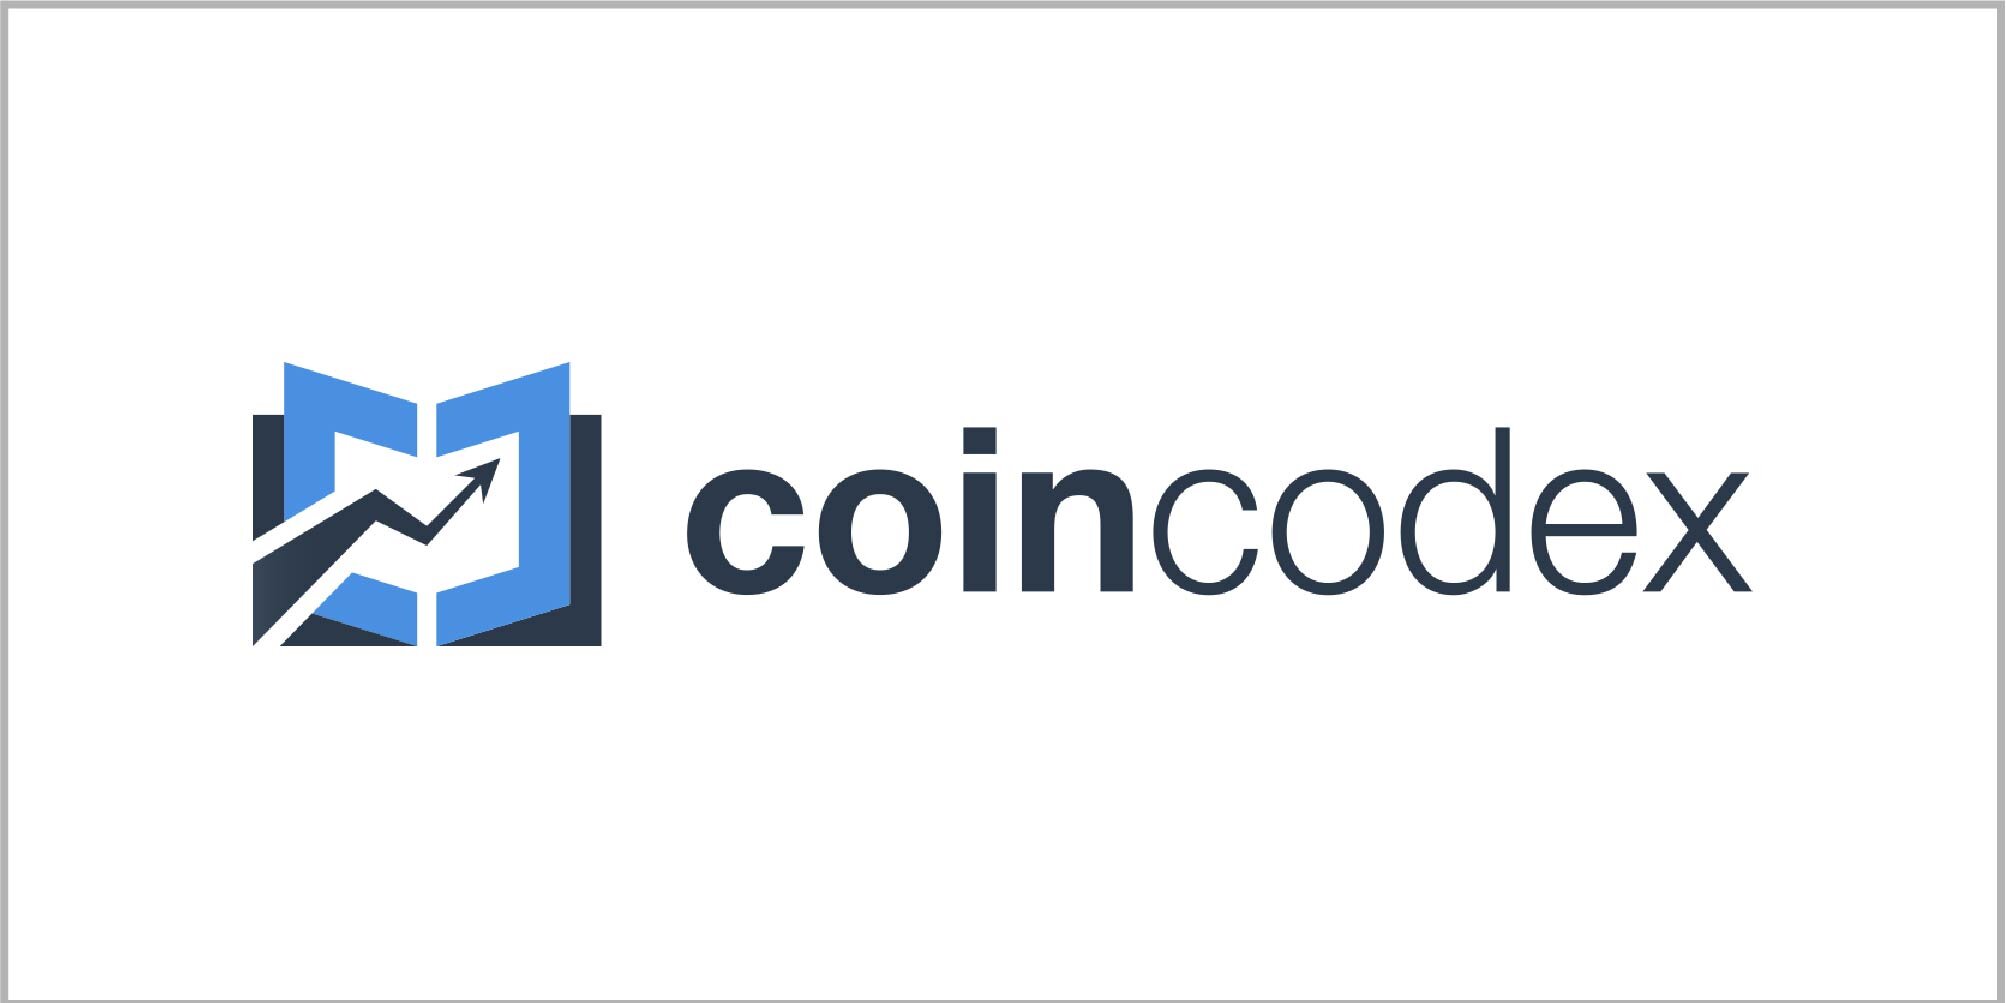 کوین کدکس (Coincodex)؛ ابزاری برای معامله‌گران کریپتو